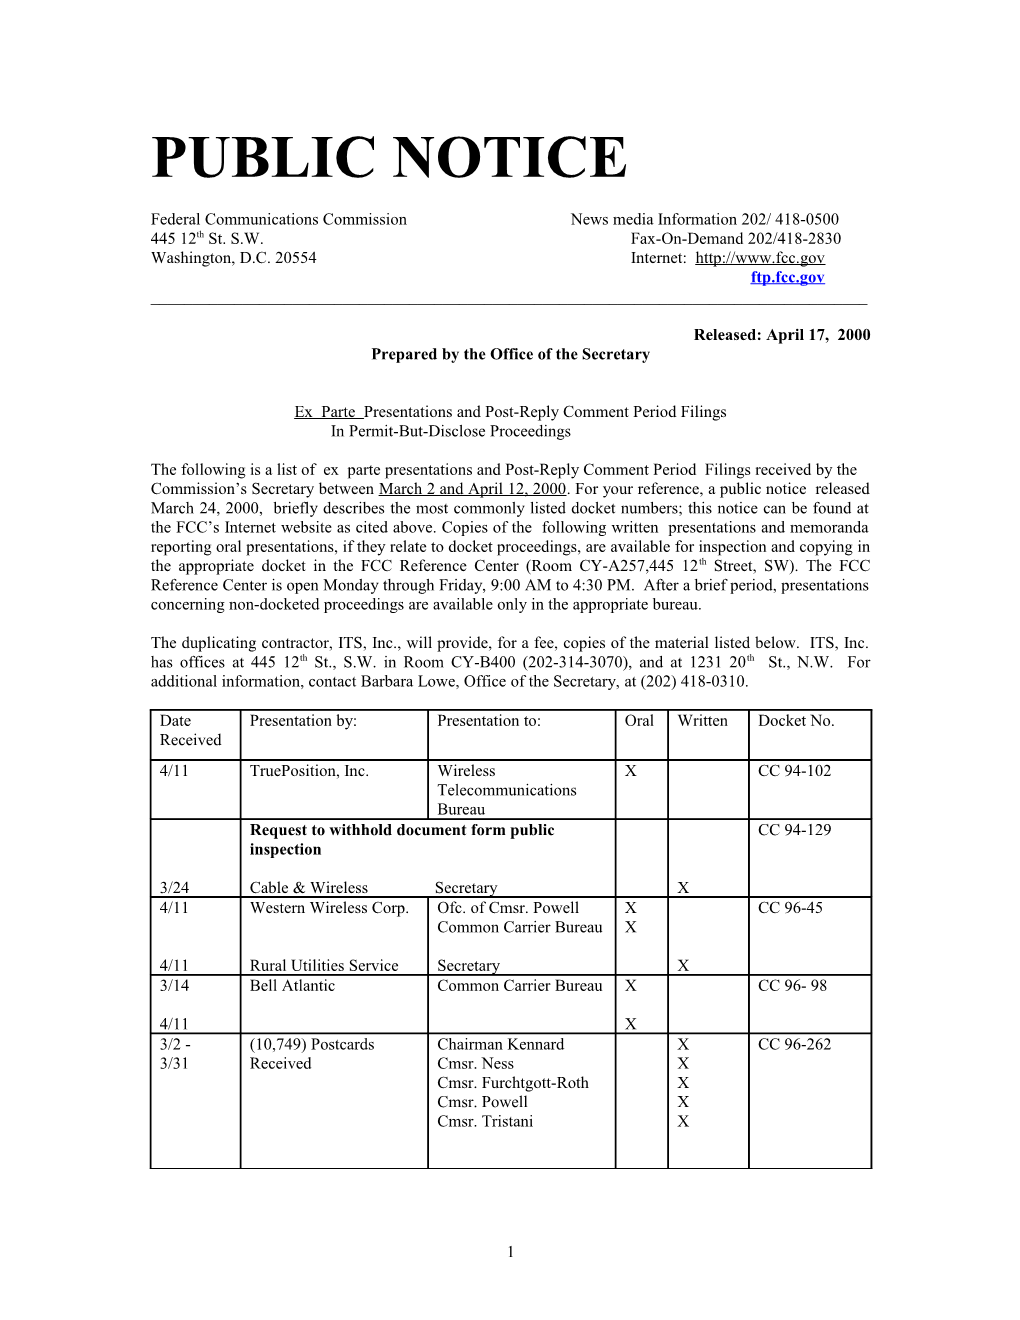 Public Notice s11